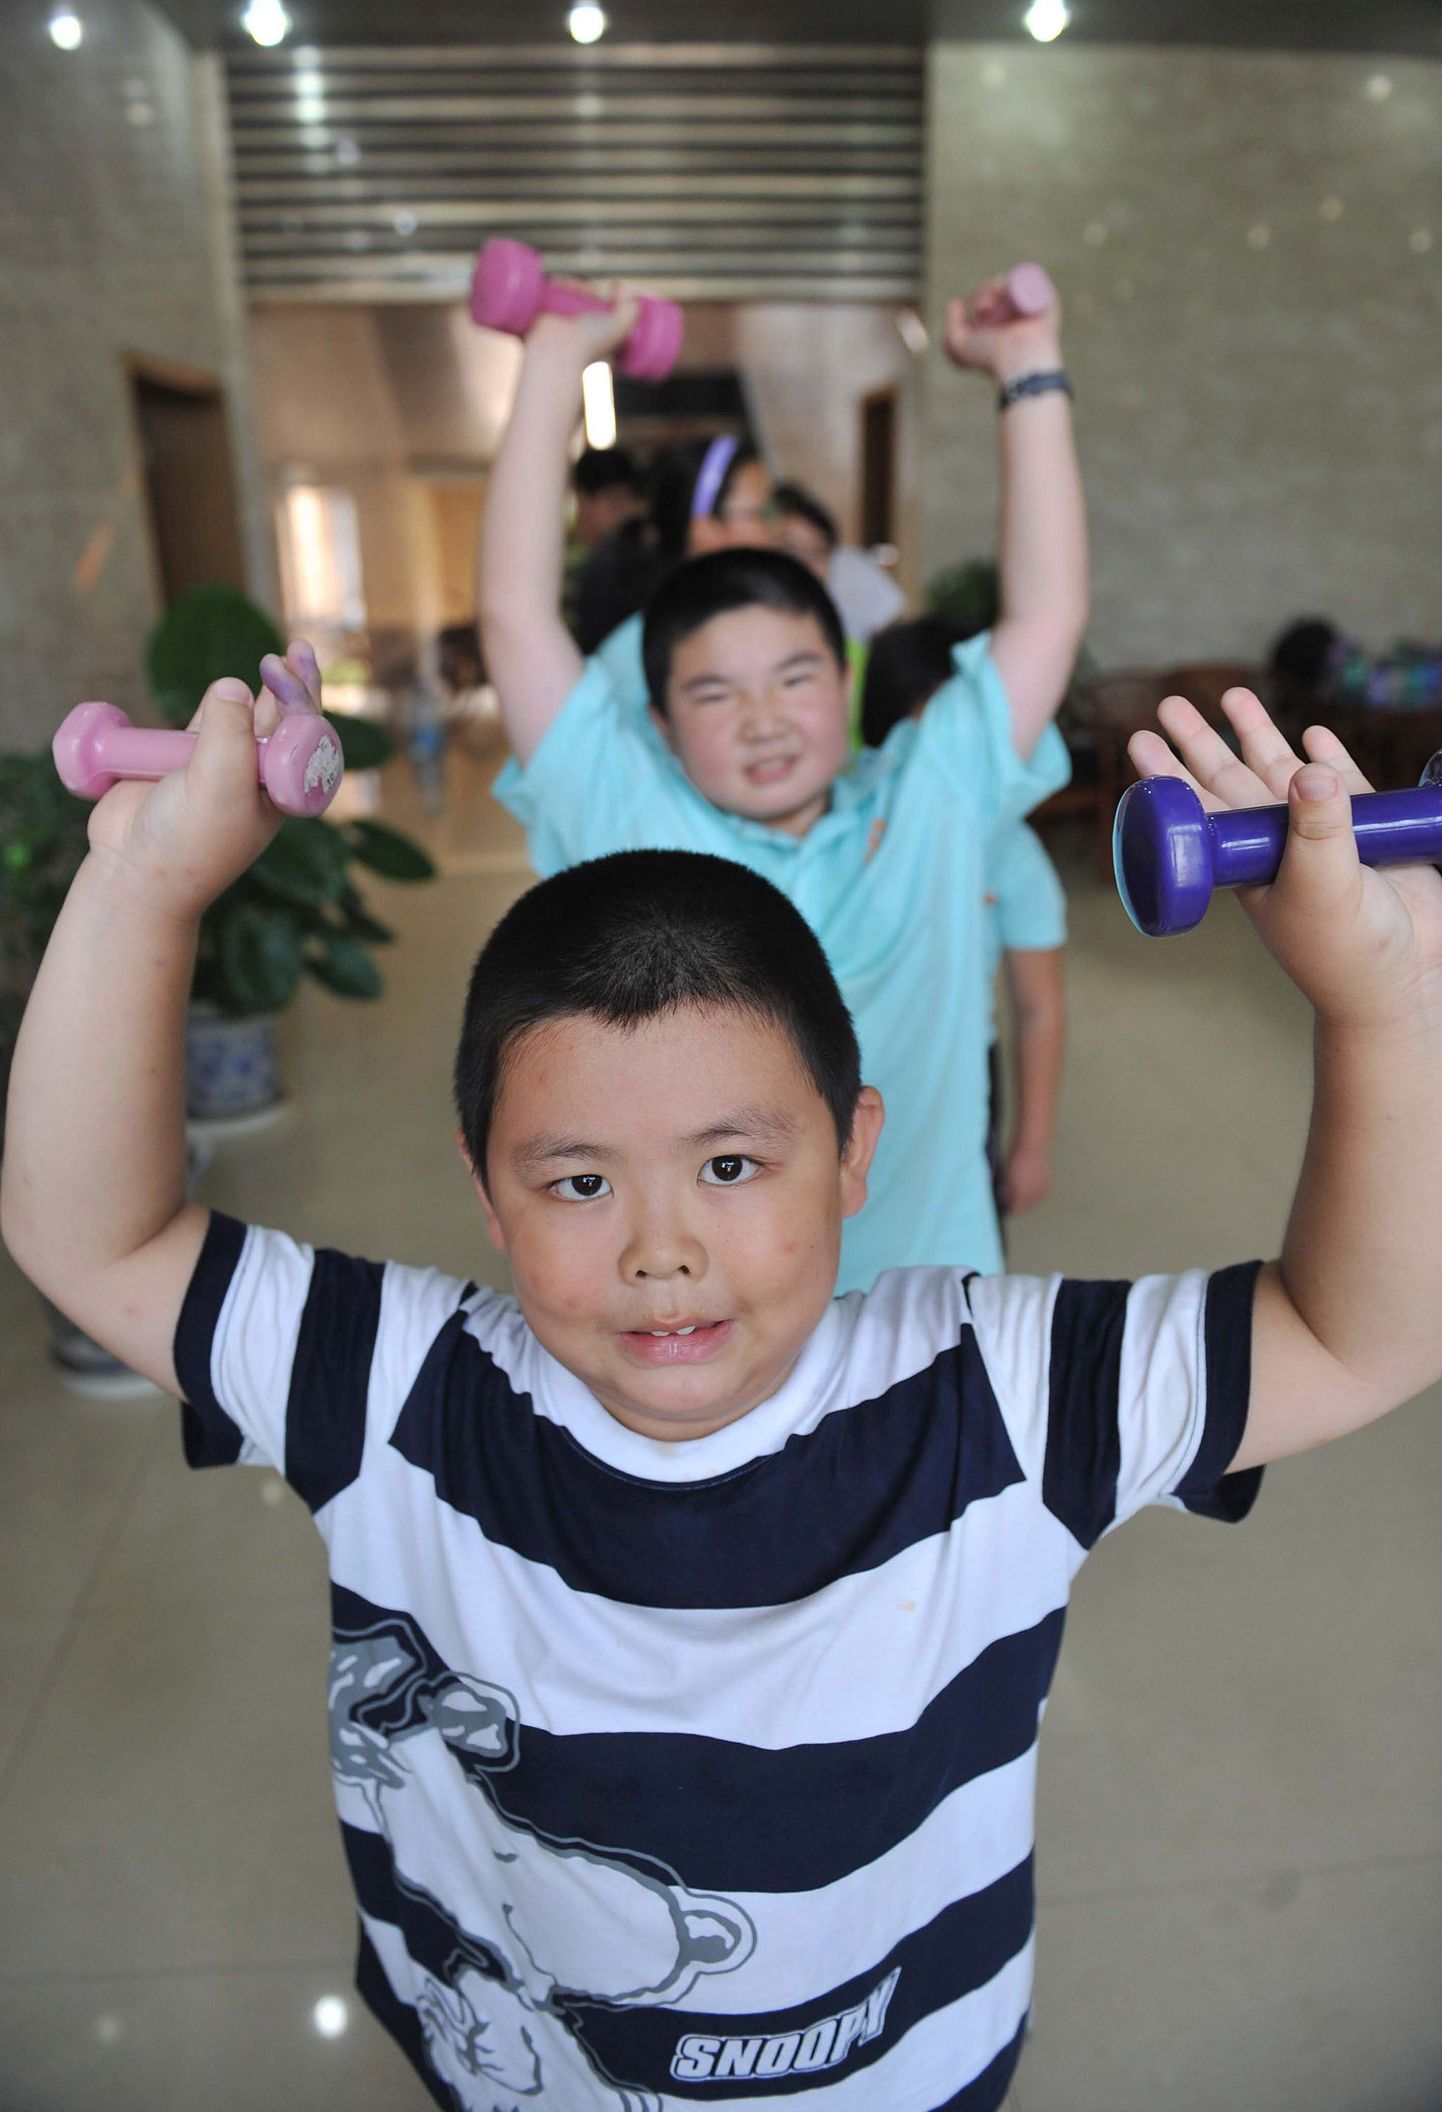 Hiina soovib lapsi suunata sporti tegema